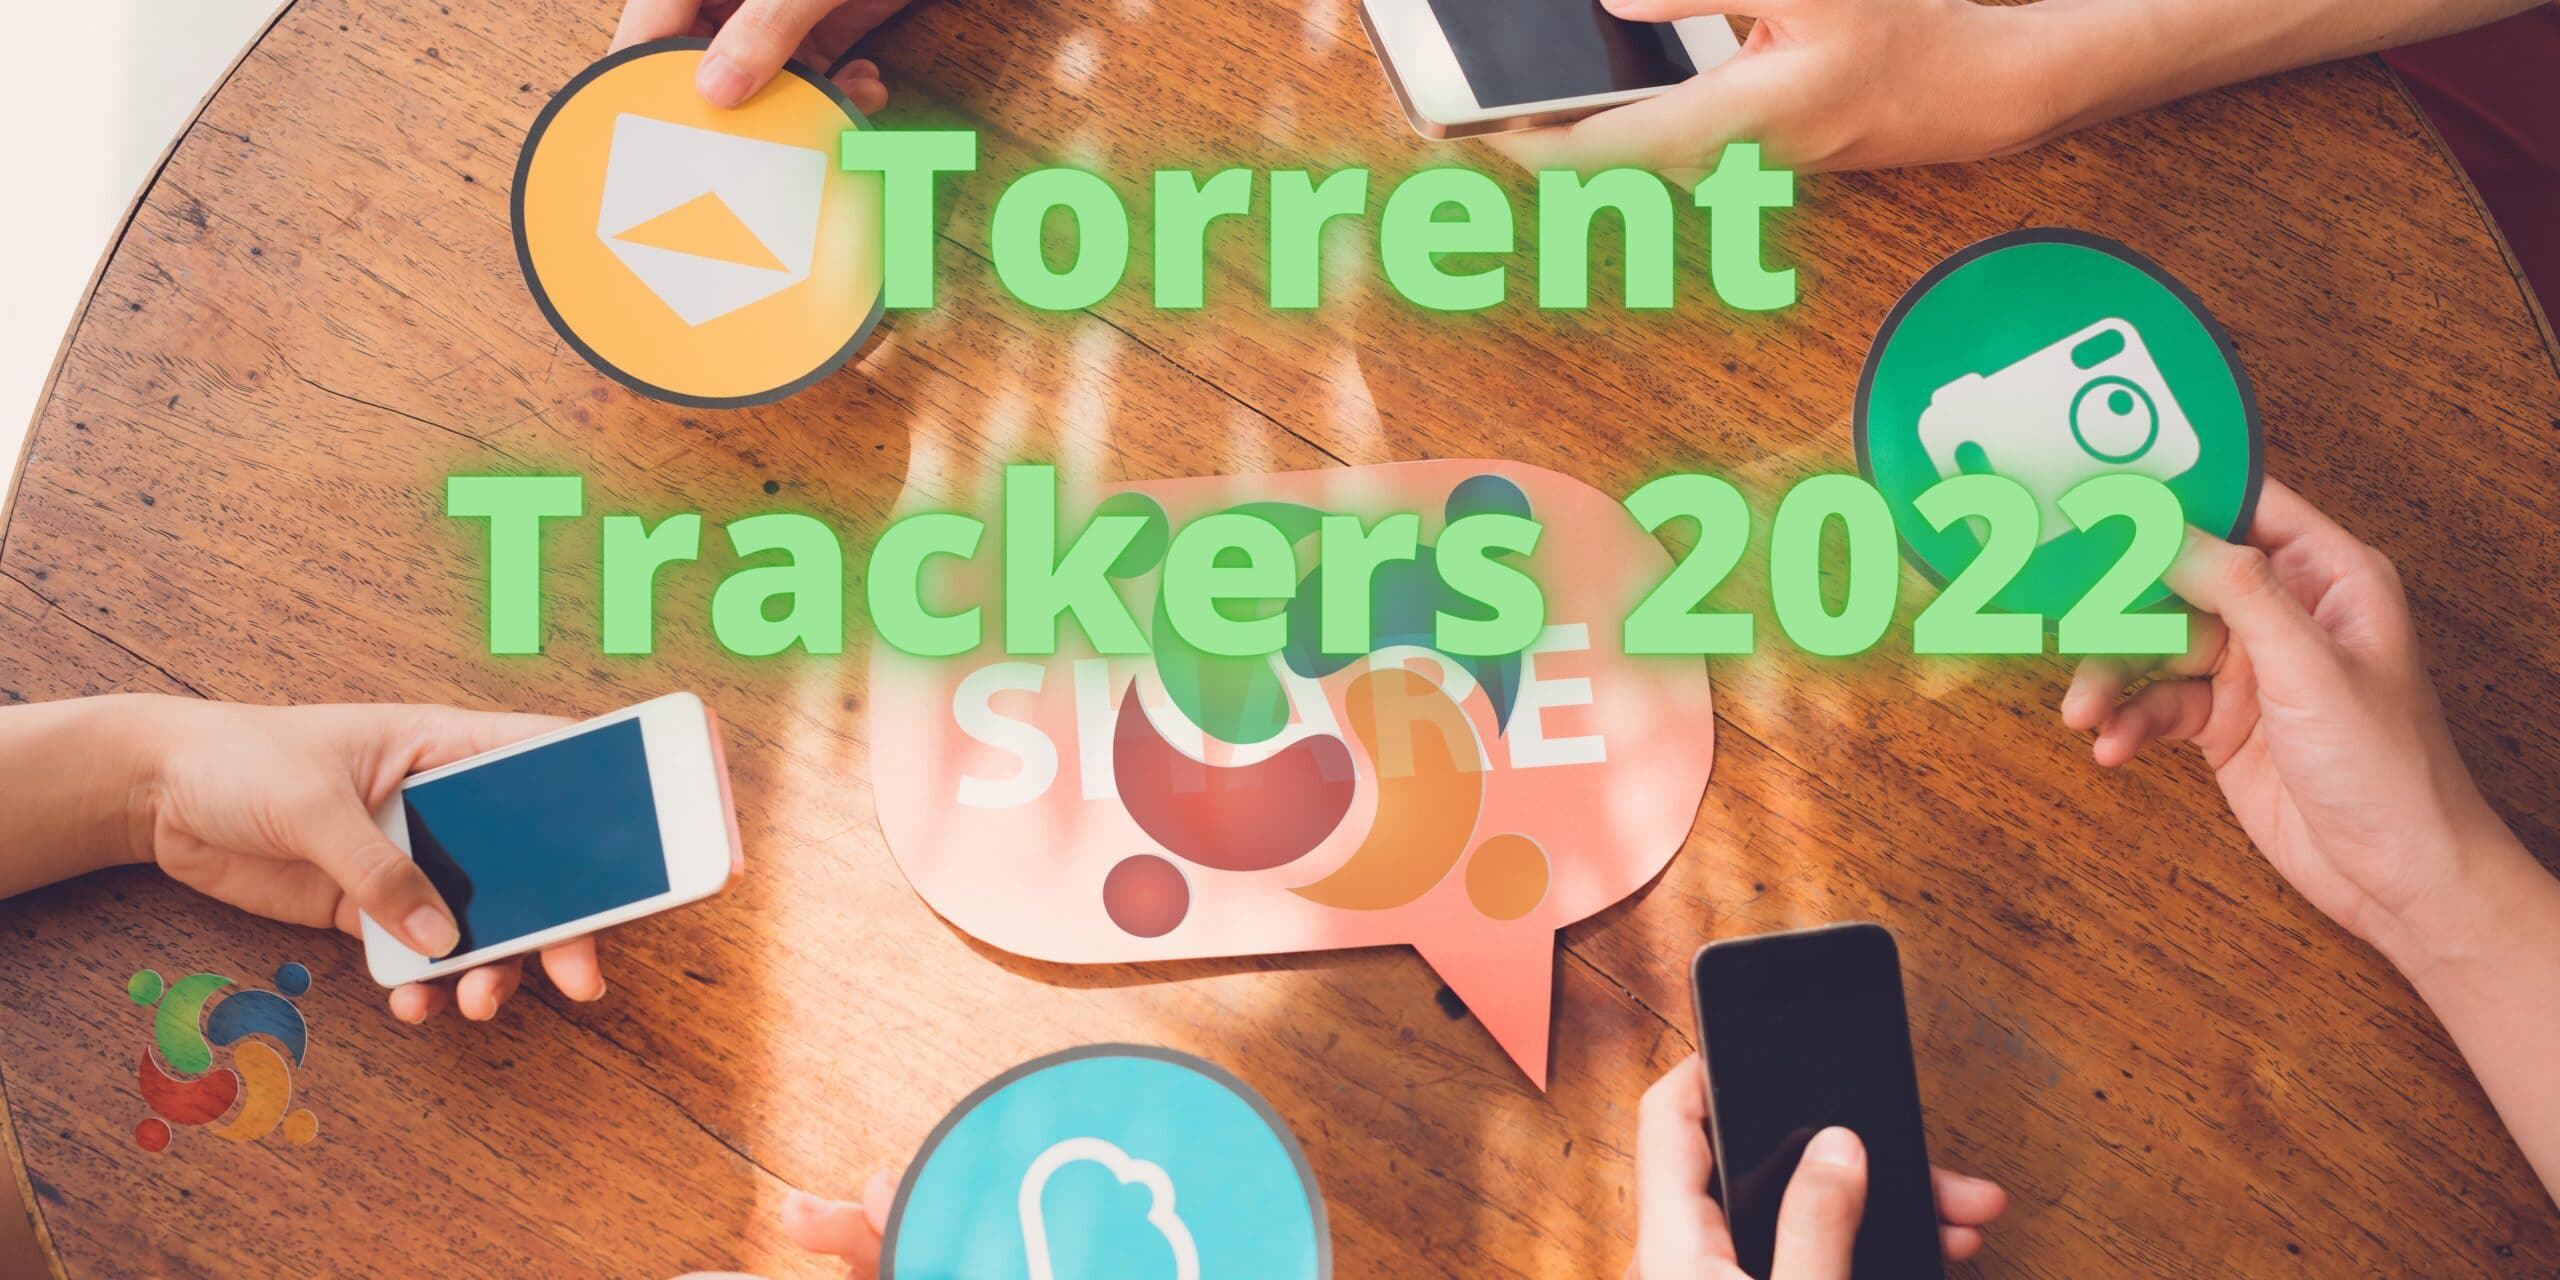 lista-de-torrent-trackers-2022-para-aumentar-a-velocidade-de-download